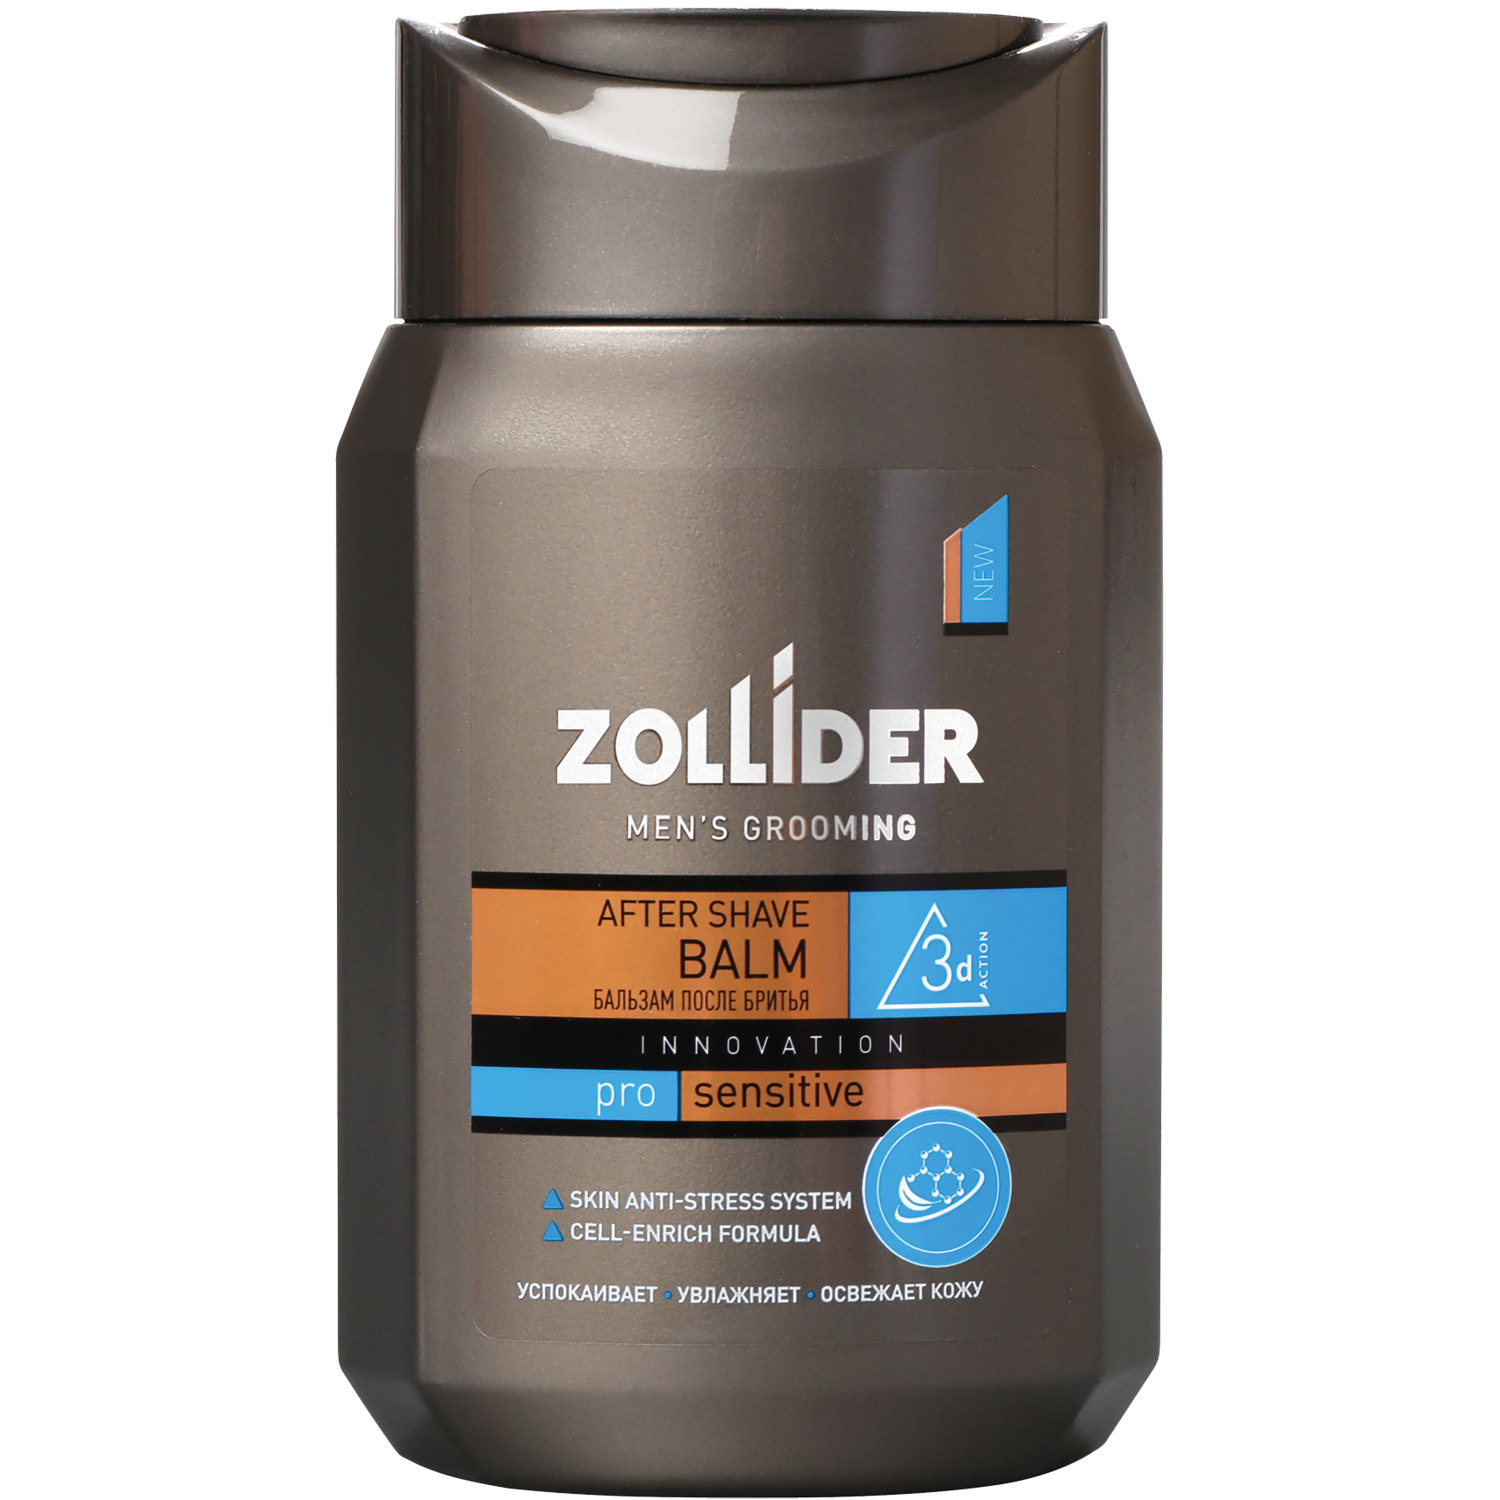 Бальзам после бритья Zollider Pro Sensitive для чувствительной кожи 150 мл бальзам после бритья nivea успокаивающий для чувствительной кожи 100 мл 81306